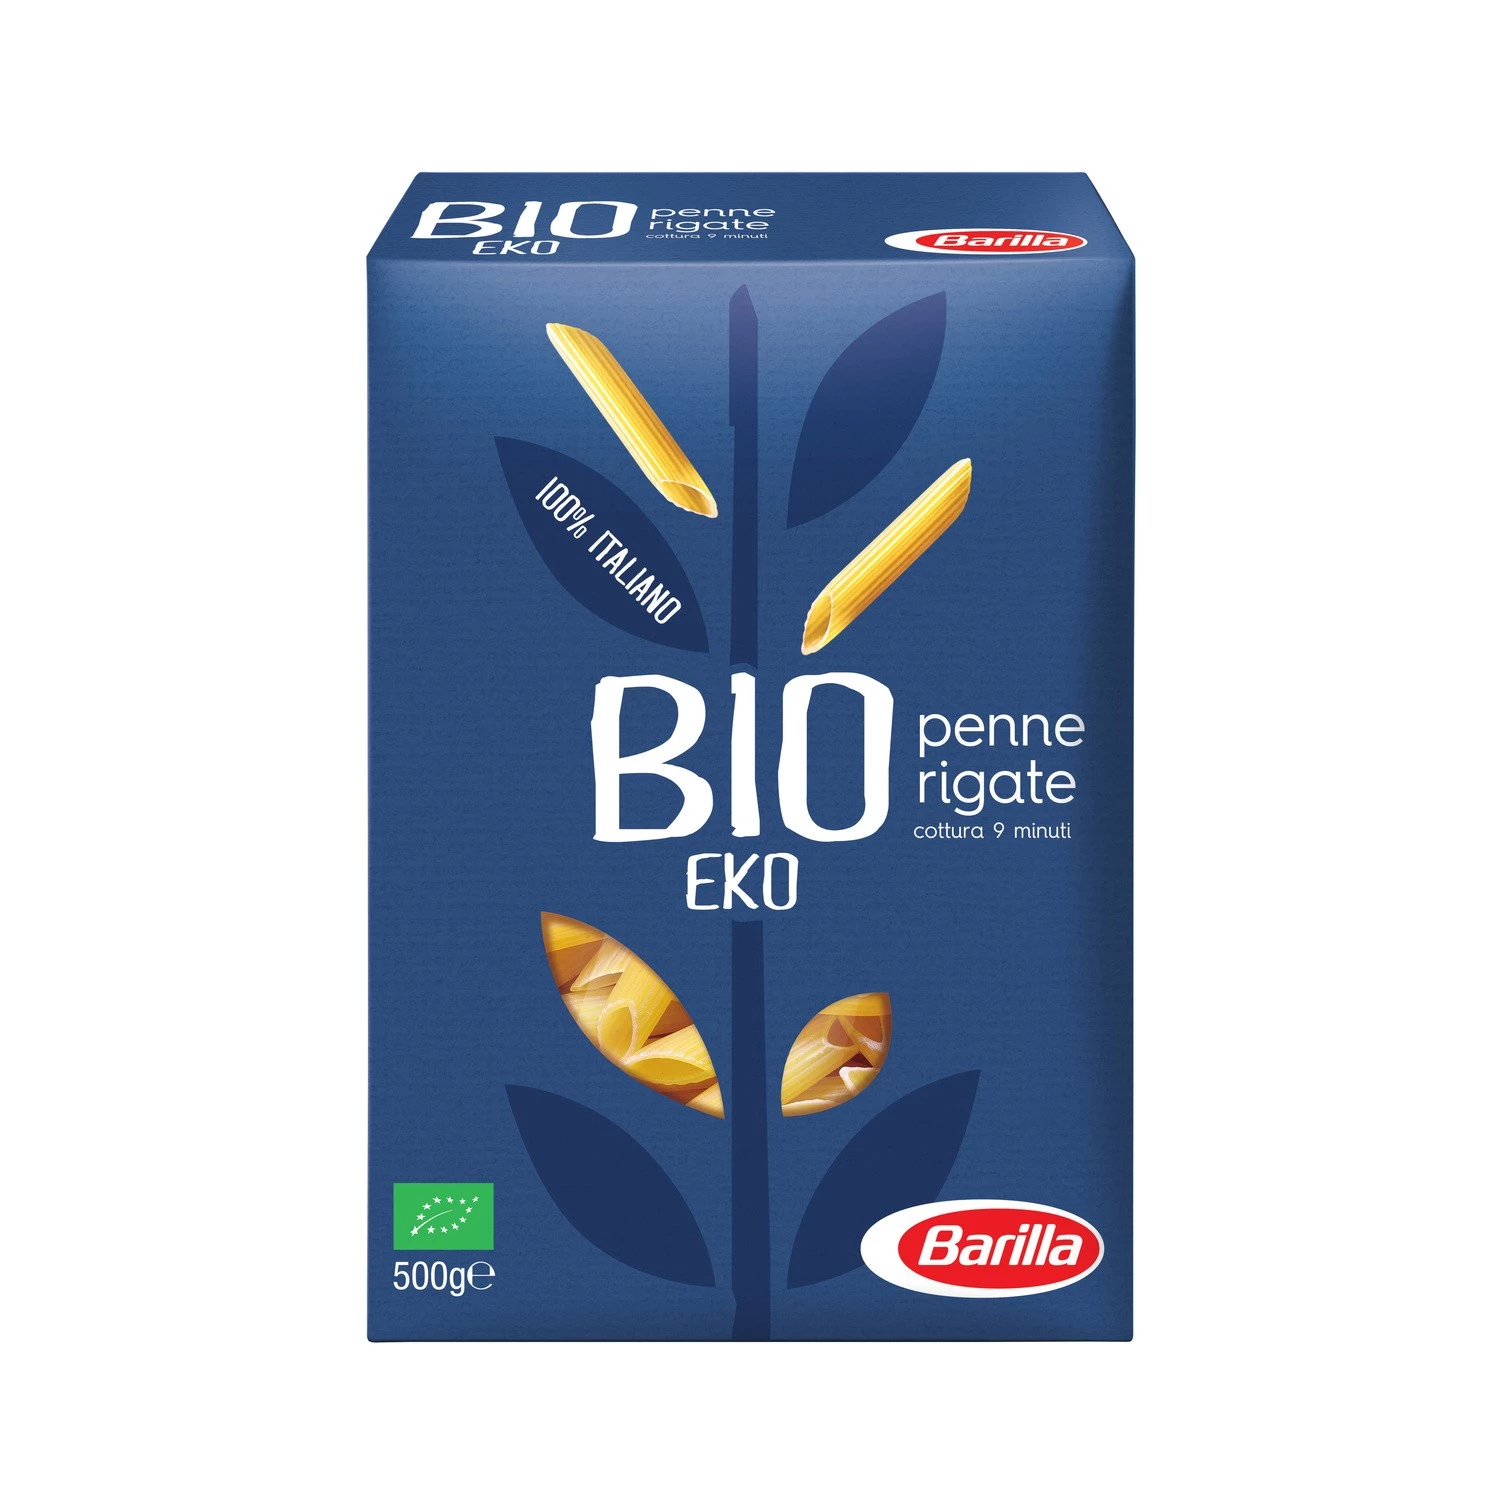 Pâtes penne rigate Bio 500g - BARILLA